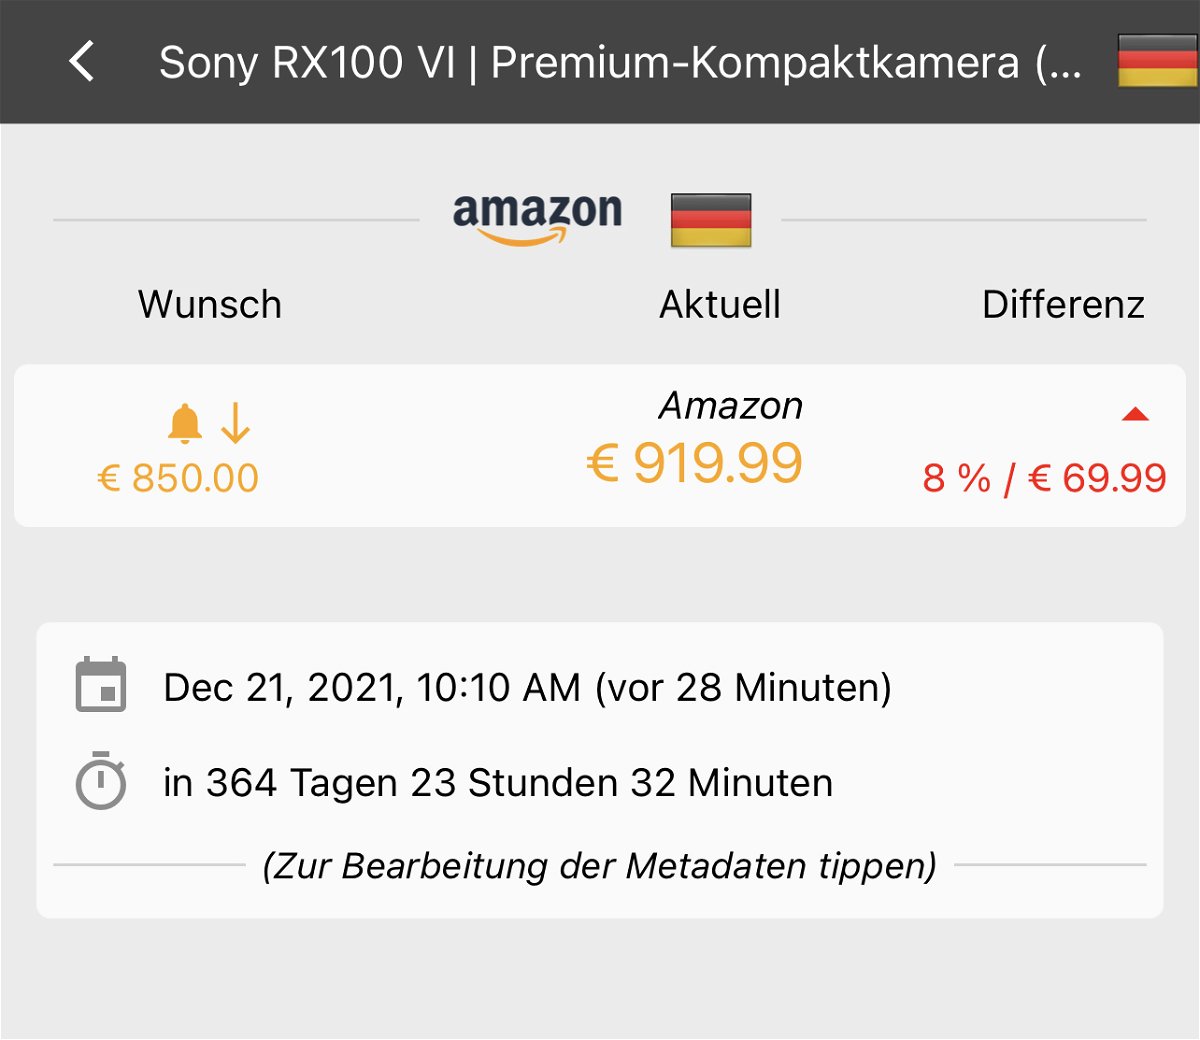 , Preisalarme bei Amazon setzen: Keepa